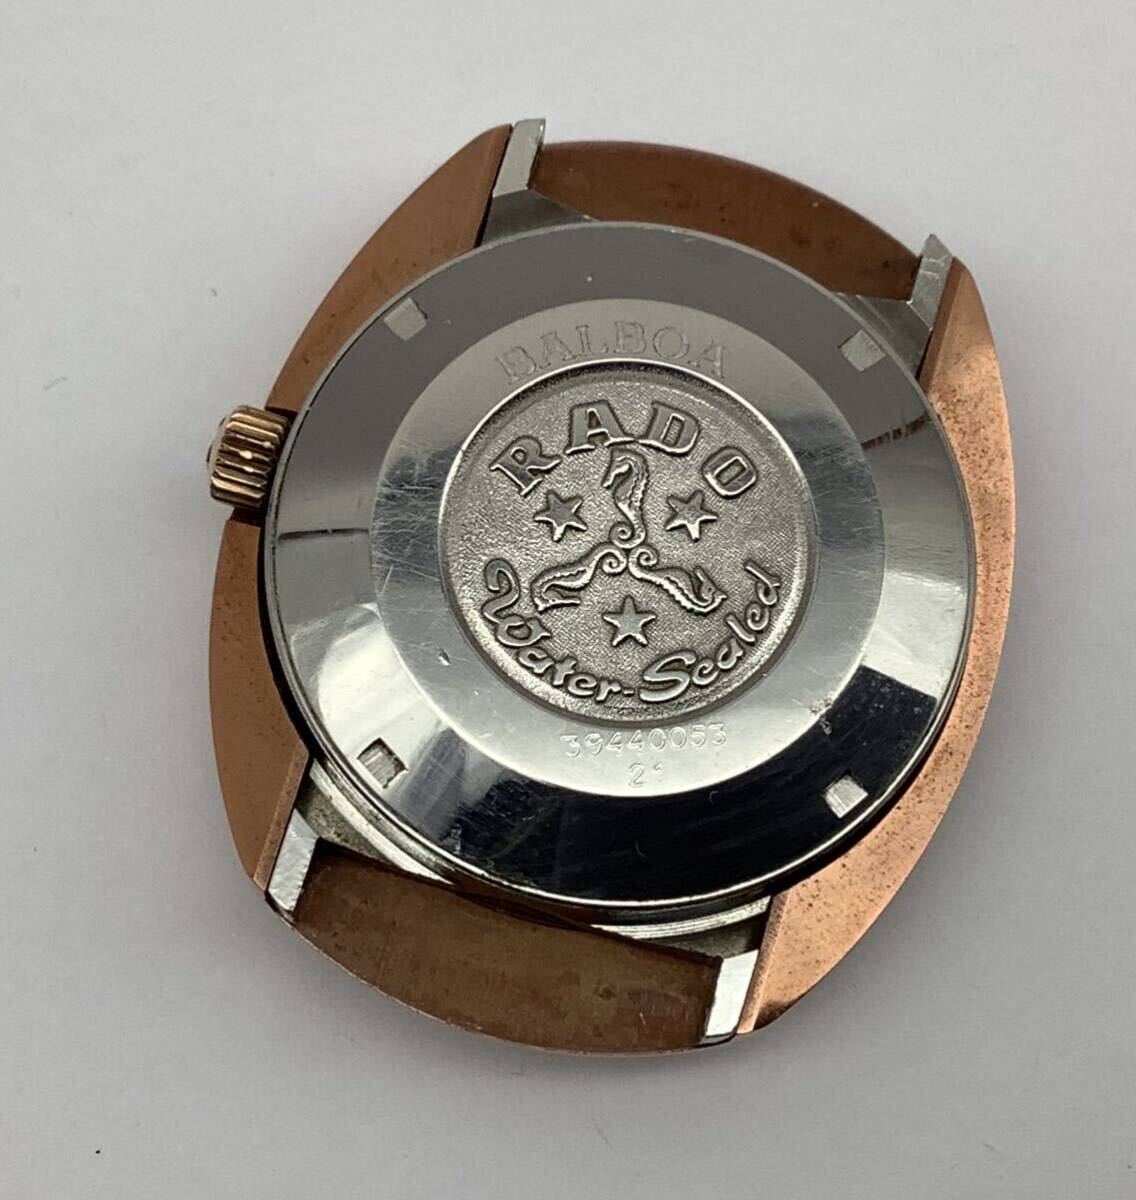 45 稼動品 RADO ラドー BALBOA バルボア 自動巻き カットガラス メンズ腕時計 本体のみ_画像2